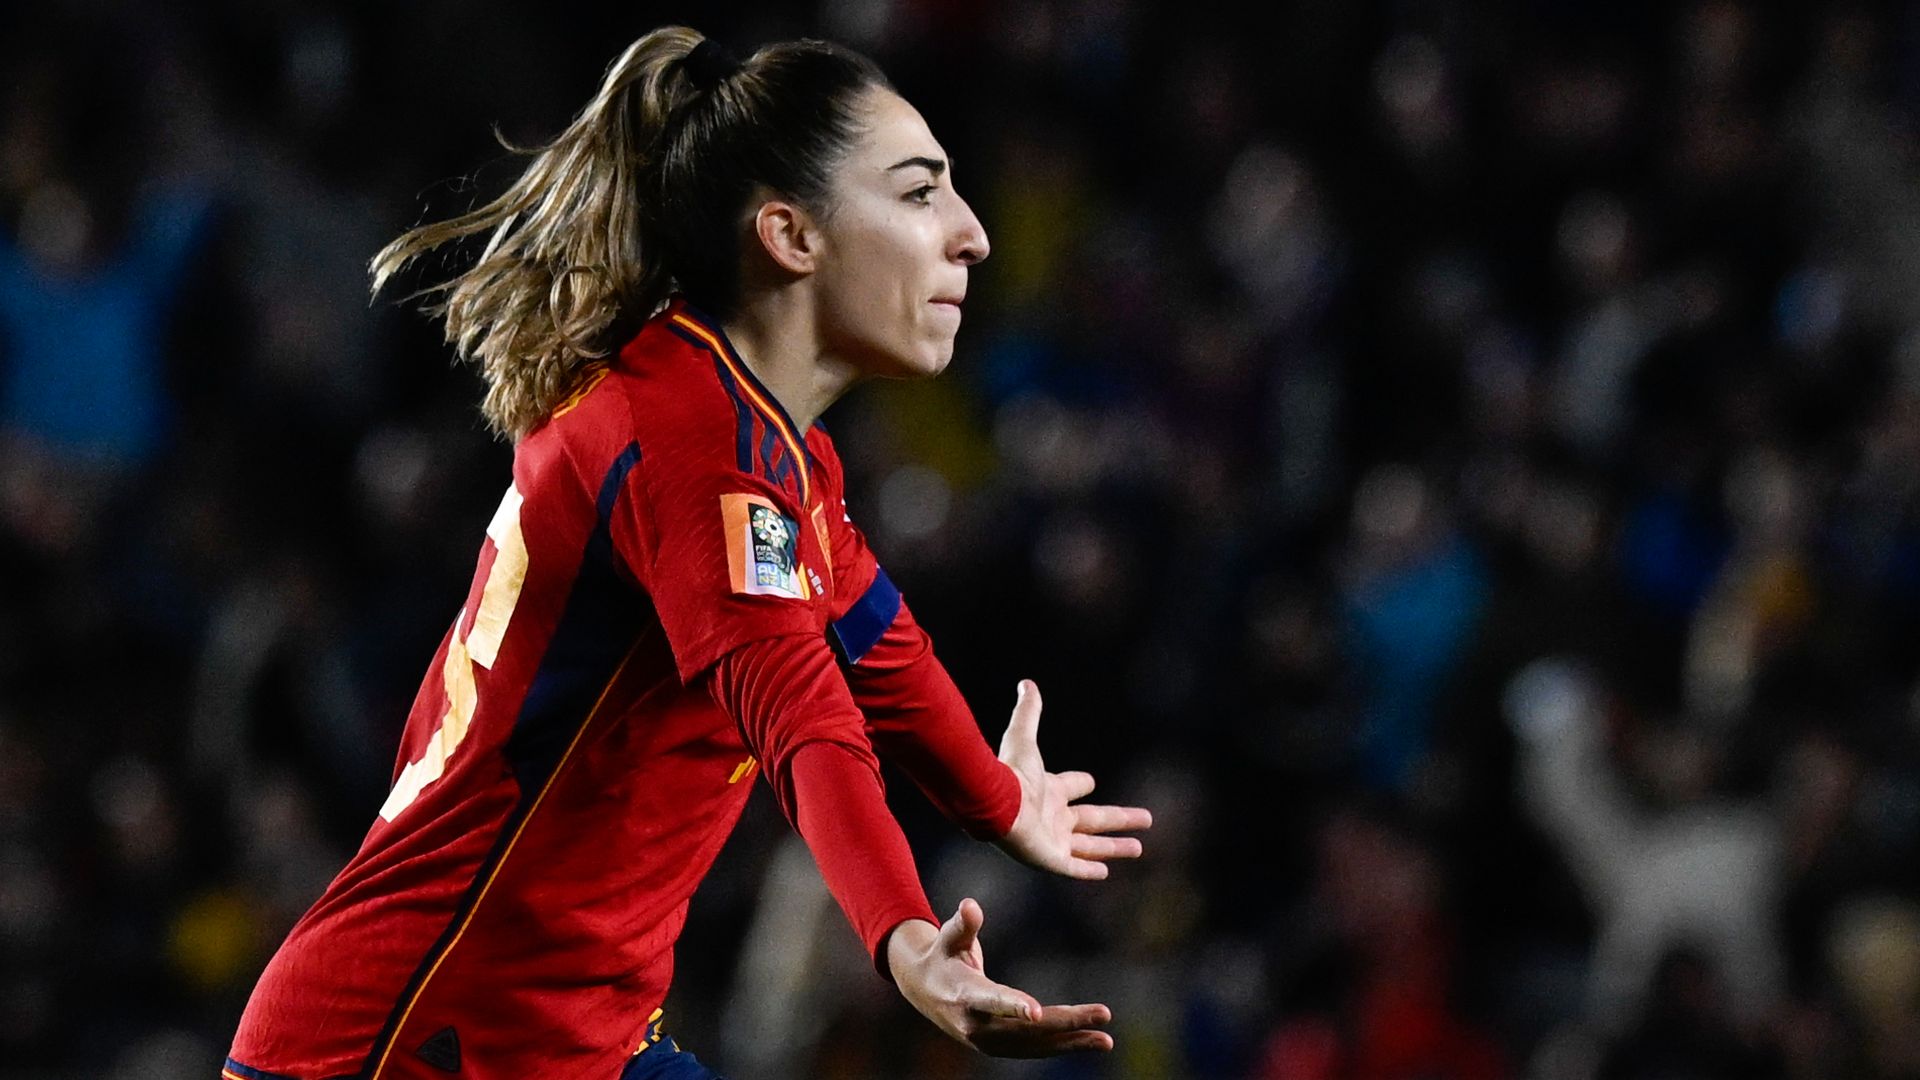 Spain reach first Women's World Cup final after late winner vs Sweden